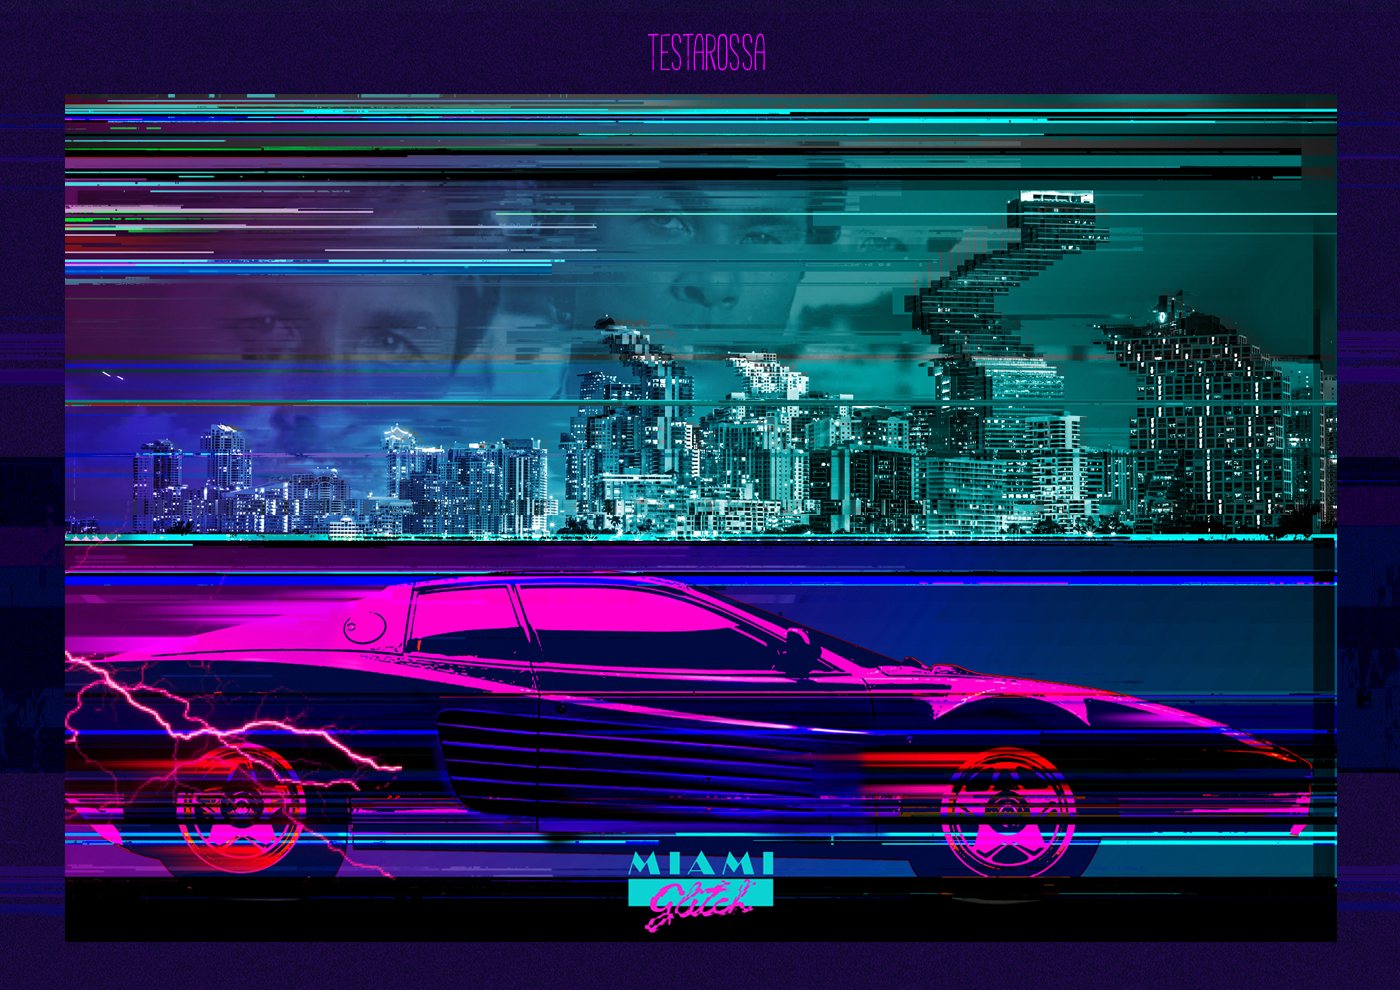 Glitch Ghostbusters madmax collage miami vice escape New York car Classic Retro 80s DeLorean interceptor back future